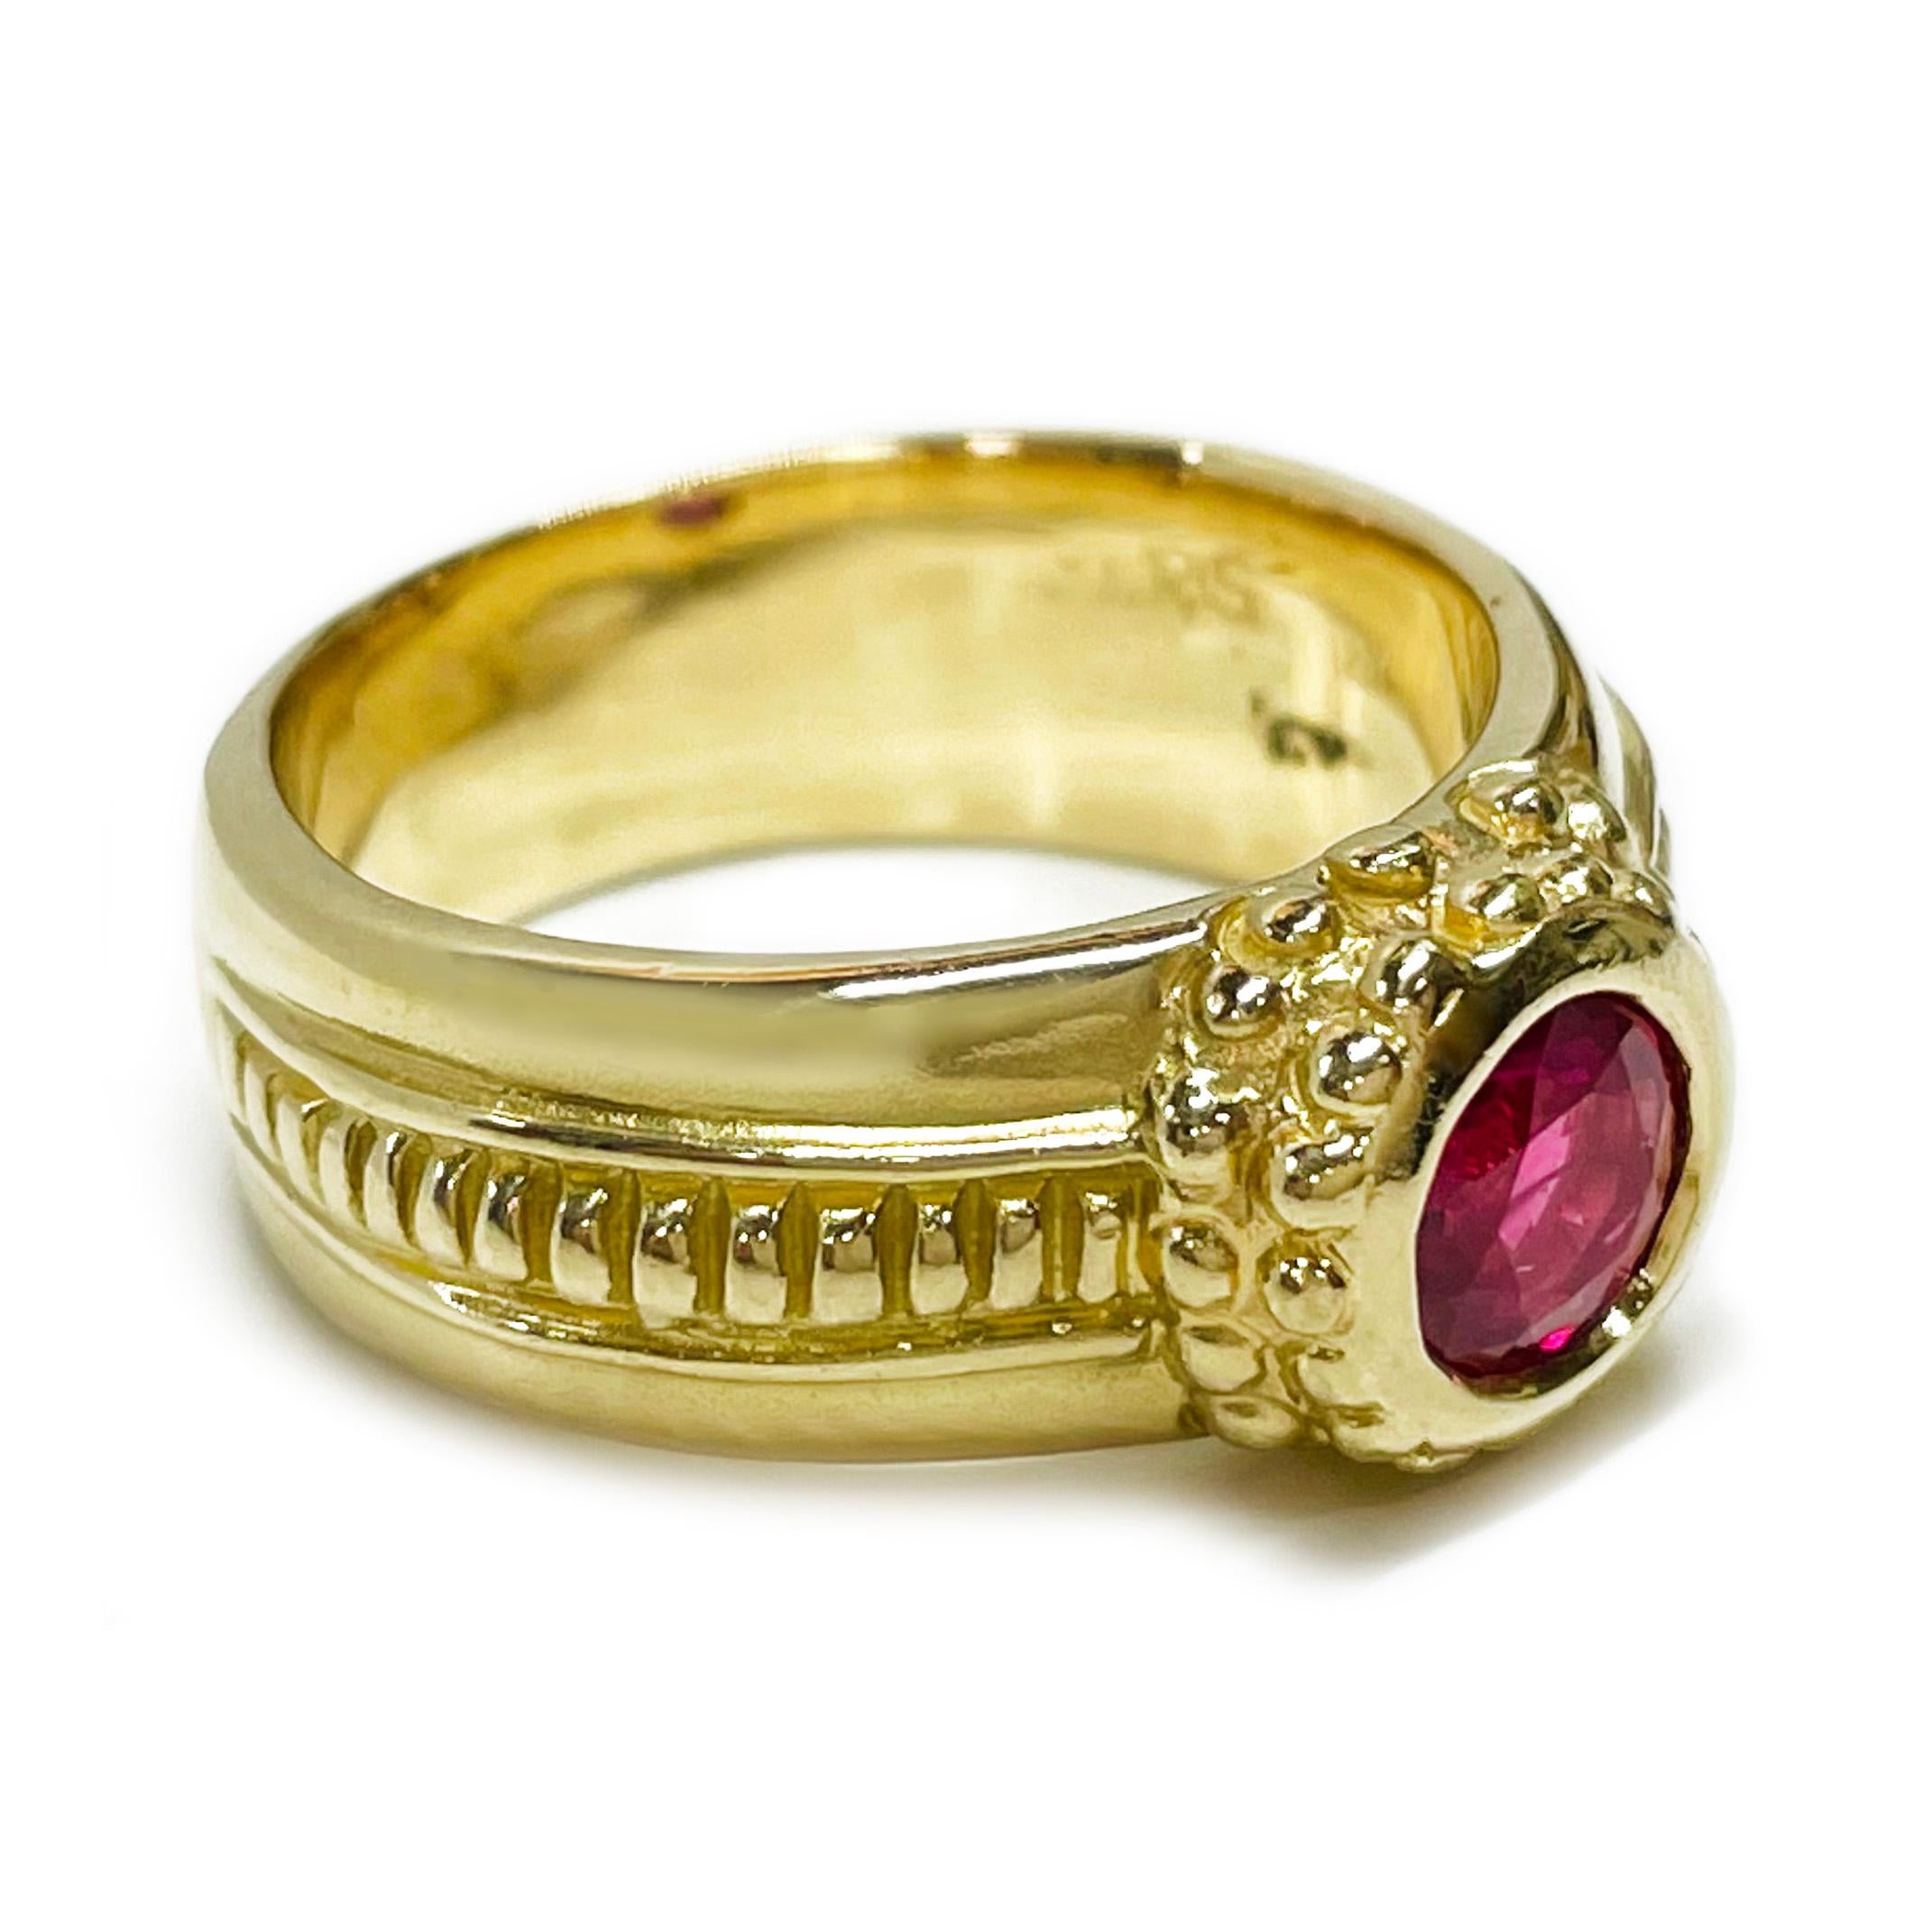 rubinring aus 18 Karat Gelbgold. Der Ring enthält einen einzelnen runden Rubin in Lünettenfassung mit einem ungefähren Karatgewicht von 0,80ct. Das schicke Band ist 6,6 mm breit und hat goldene Perlen um die zentrale Lünette und goldene Rillen an